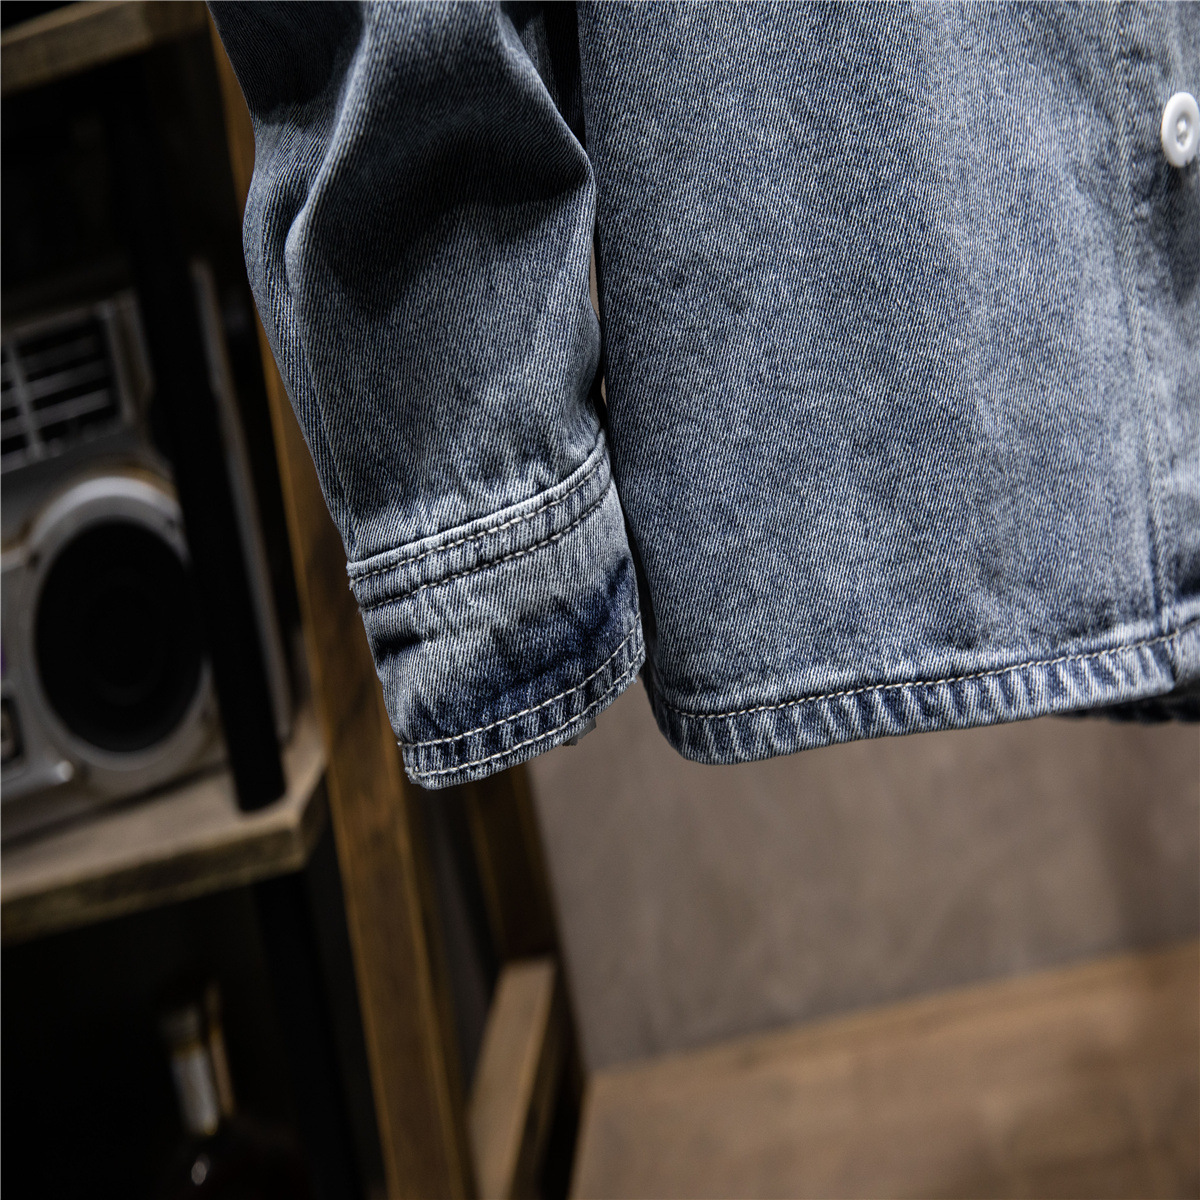 Blue jeans Jacket Men's Fashion Top Jacket Hoetla Mariha Season Top Featured Image